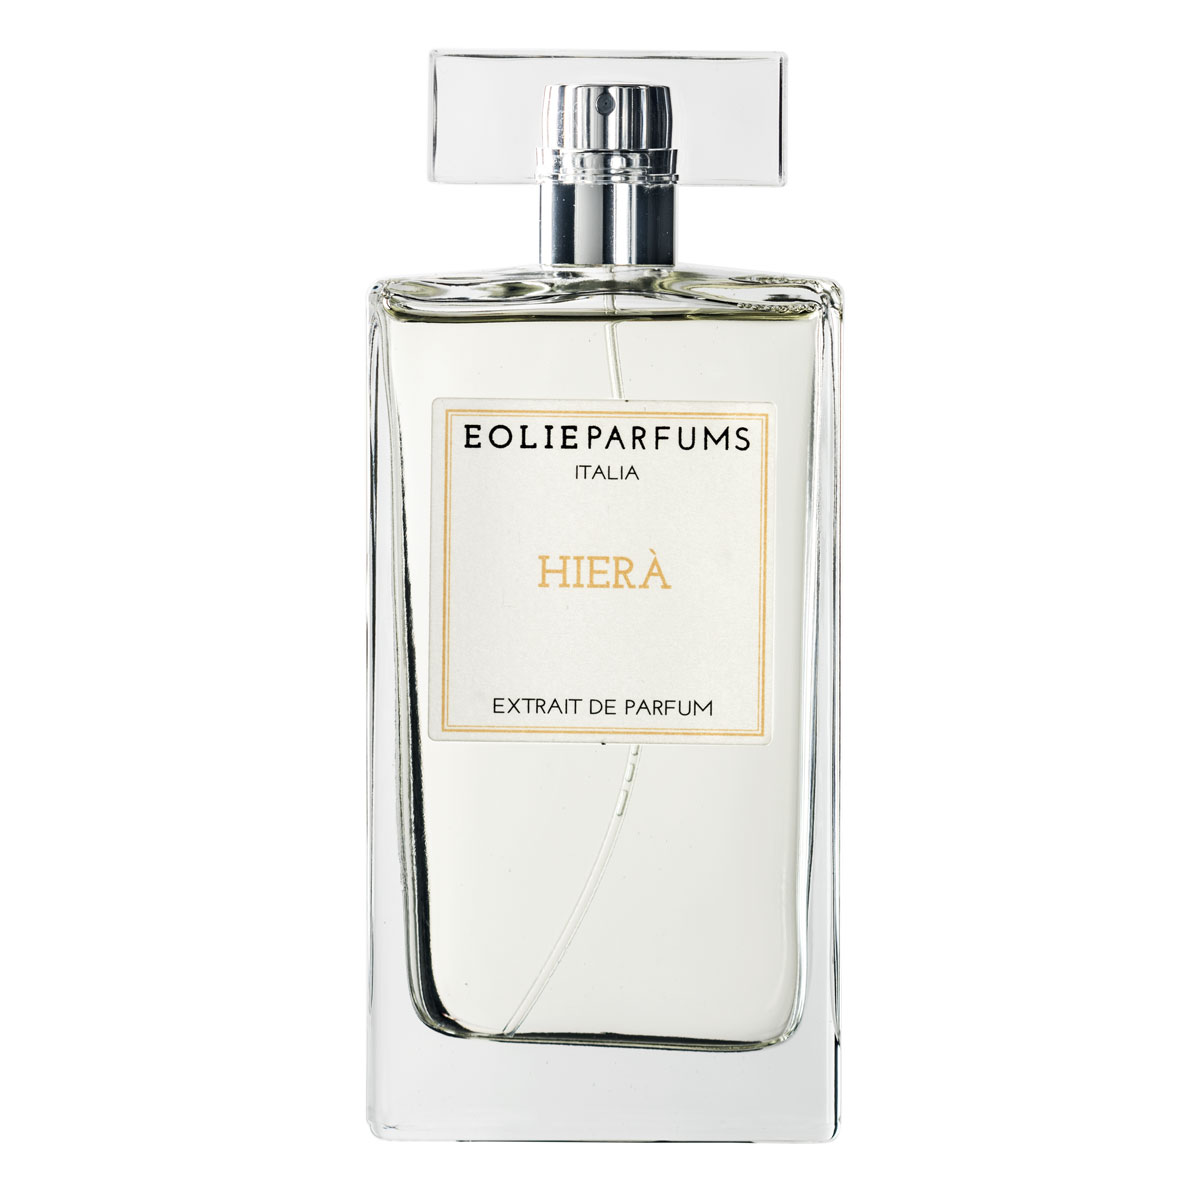 TESTER Eolieparfums Italia HIERA’ EXTRAIT DE PARFUM 100 Ml